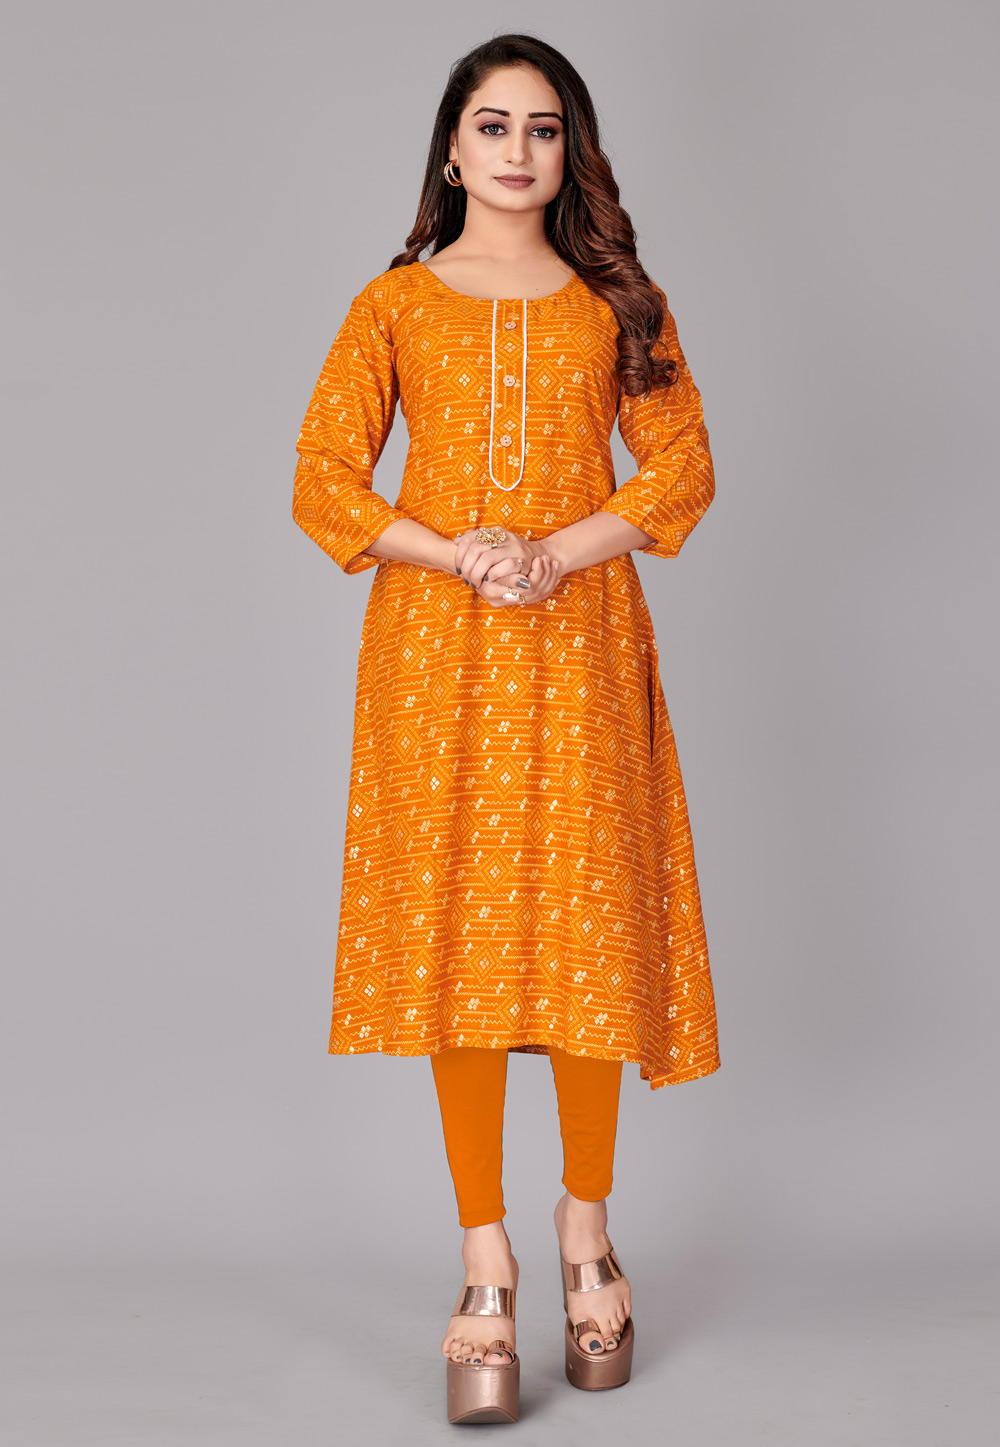 Orange Rayon Printed Tunic 247147